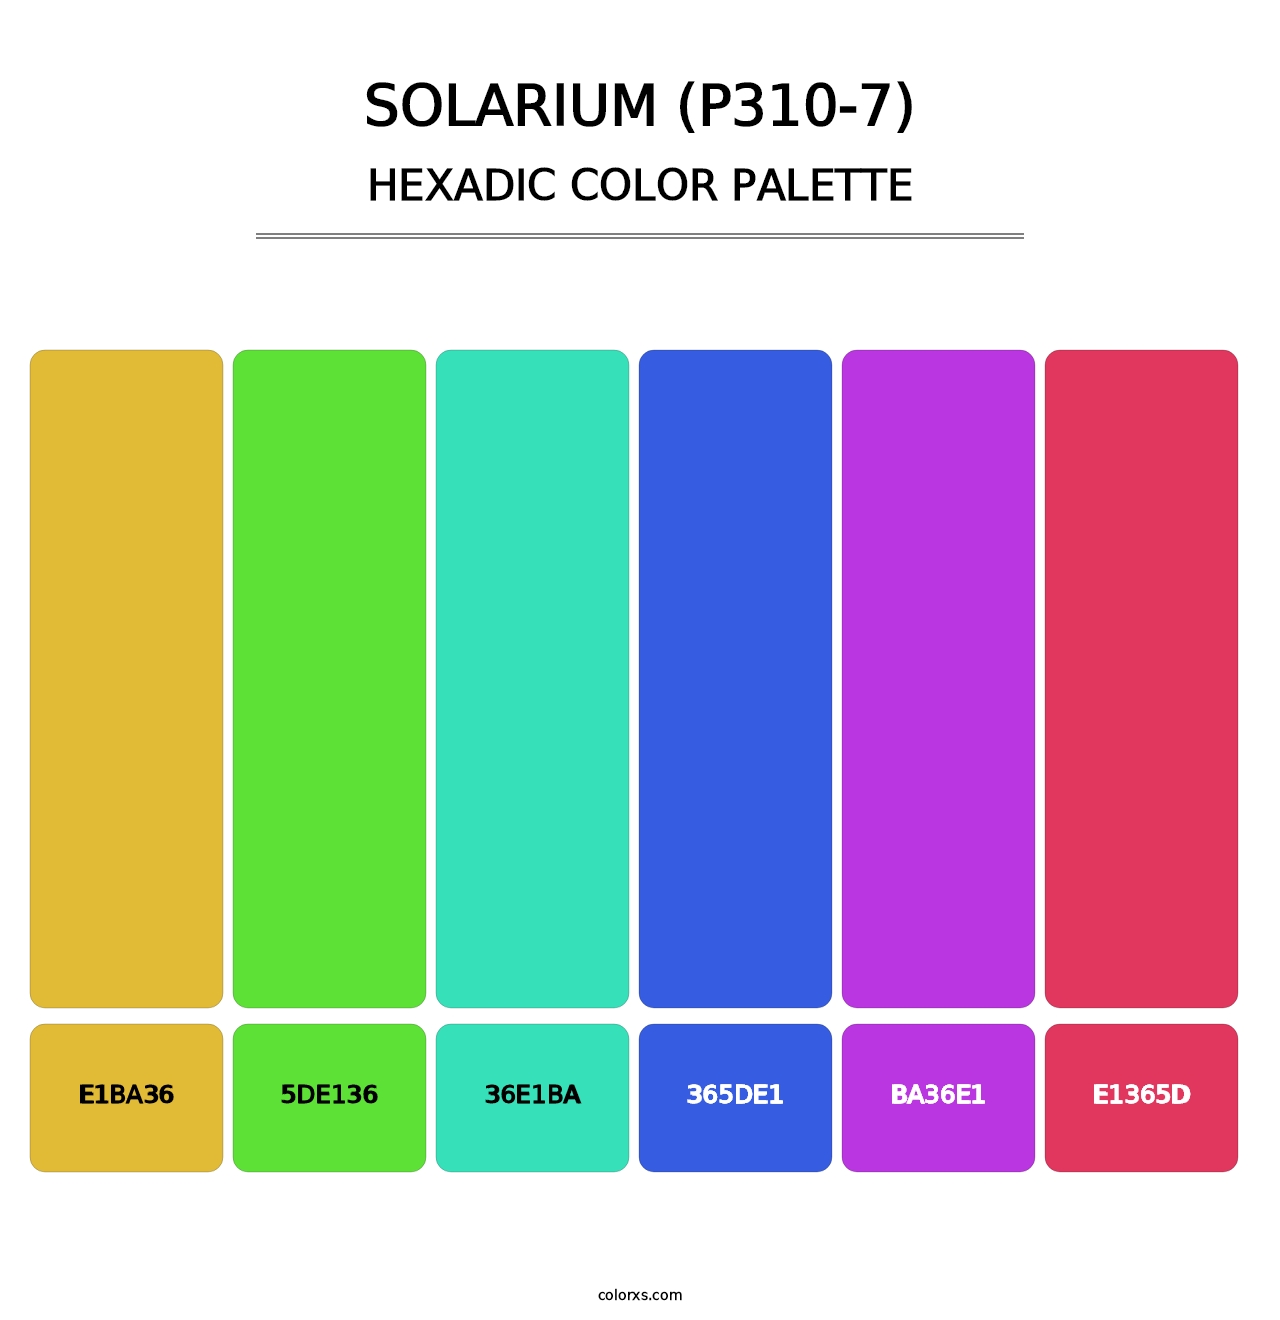 Solarium (P310-7) - Hexadic Color Palette